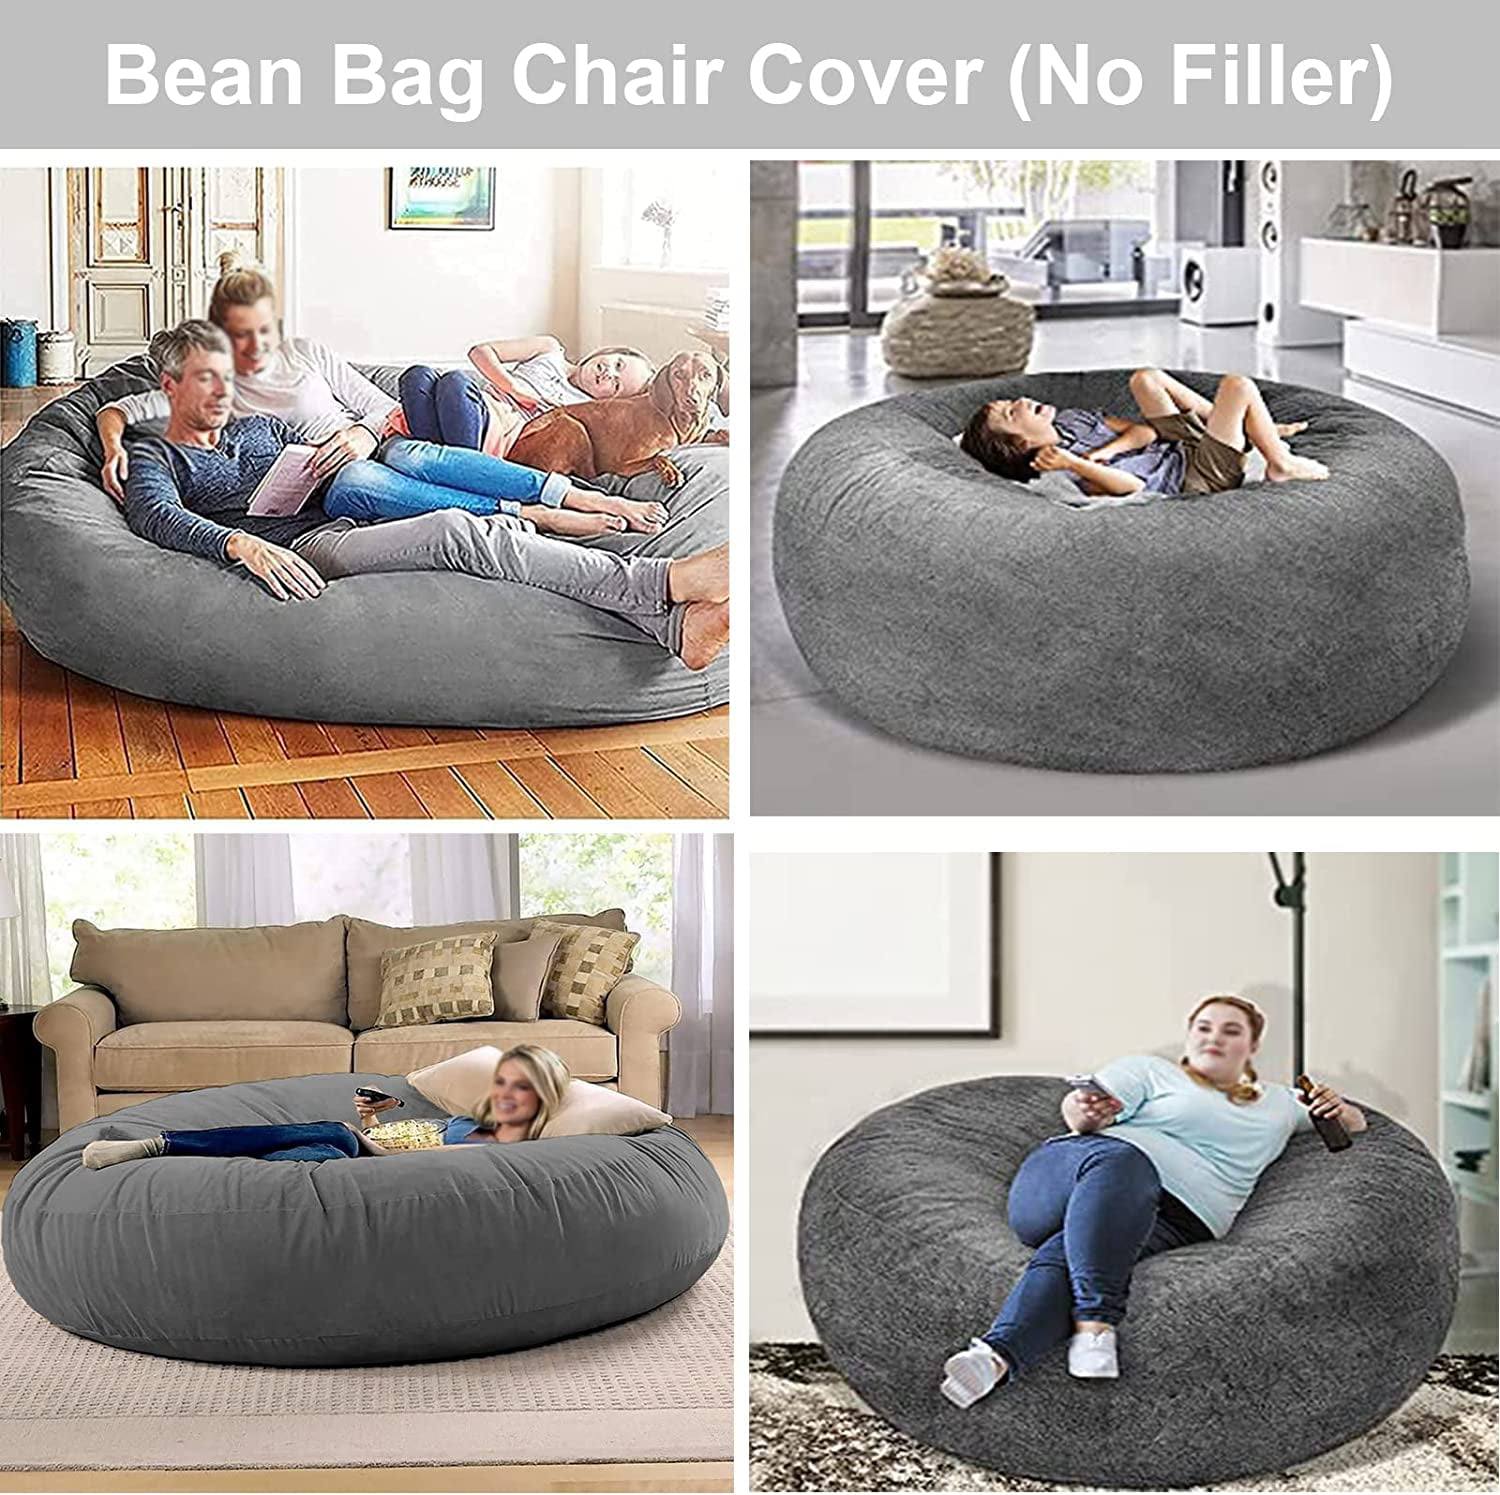 Bean Bag Chairs, Giant Bean Bag Cover, Soft Fluffy Fur Bean Bag Chairs for